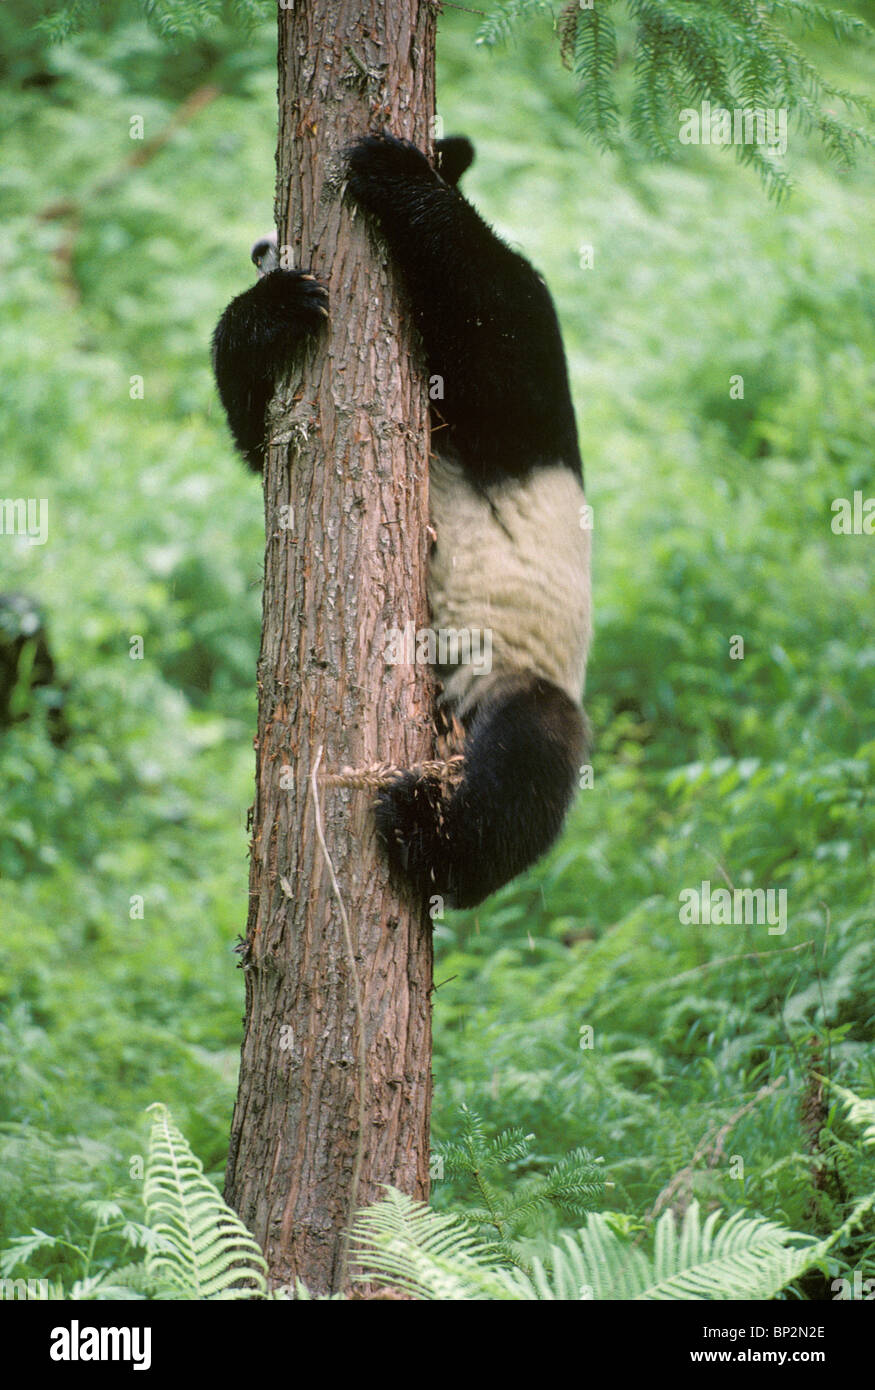 Panda gigante se desliza hacia abajo por árbol, Wolong, China, Junio Foto de stock